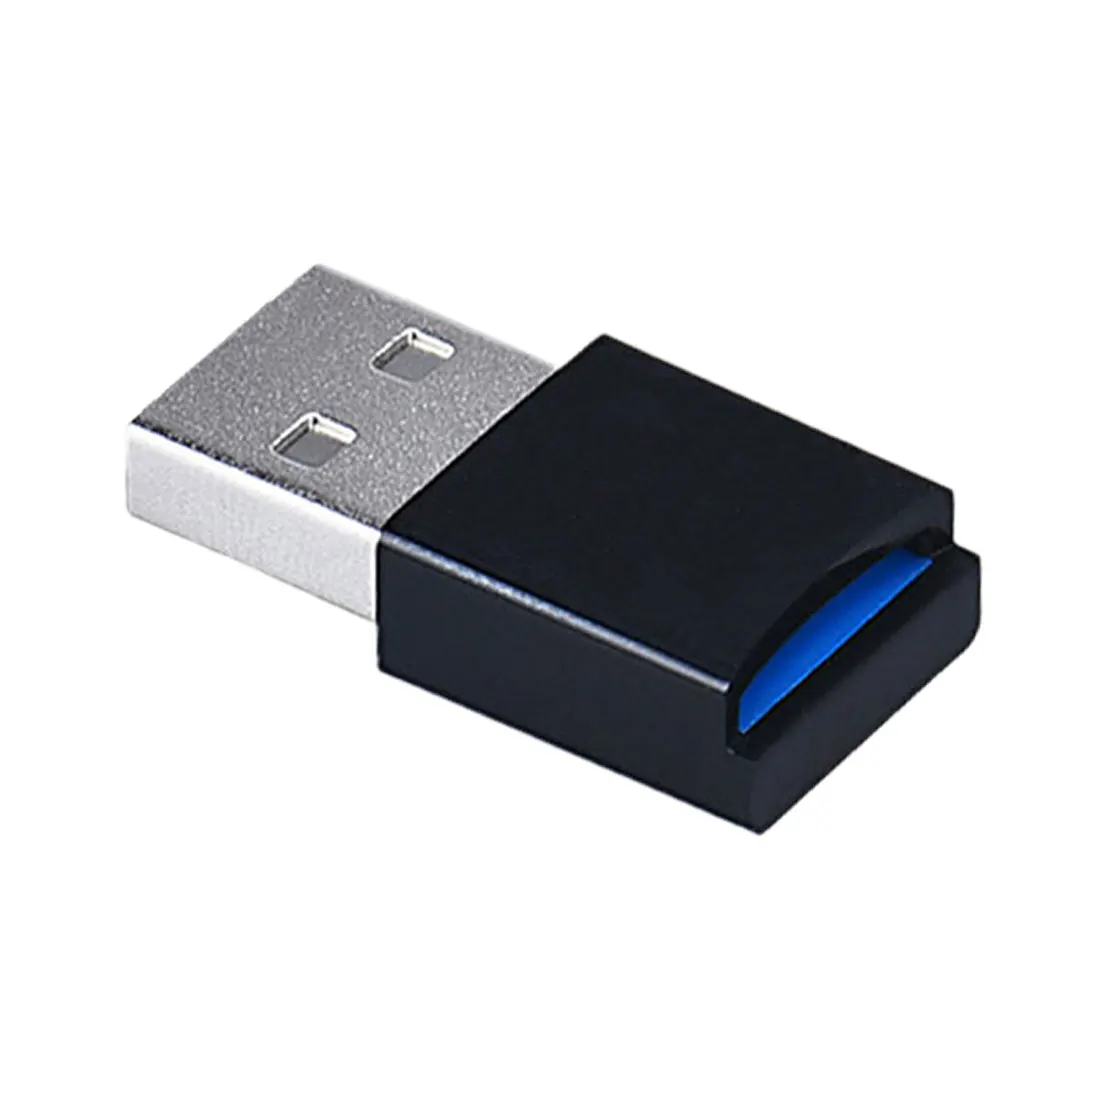 Высокоскоростной USB 3,0 интерфейс Micro SD TF T-flash считыватель карт памяти адаптер легкий портативный мини-считыватель карт памяти - Цвет: Black